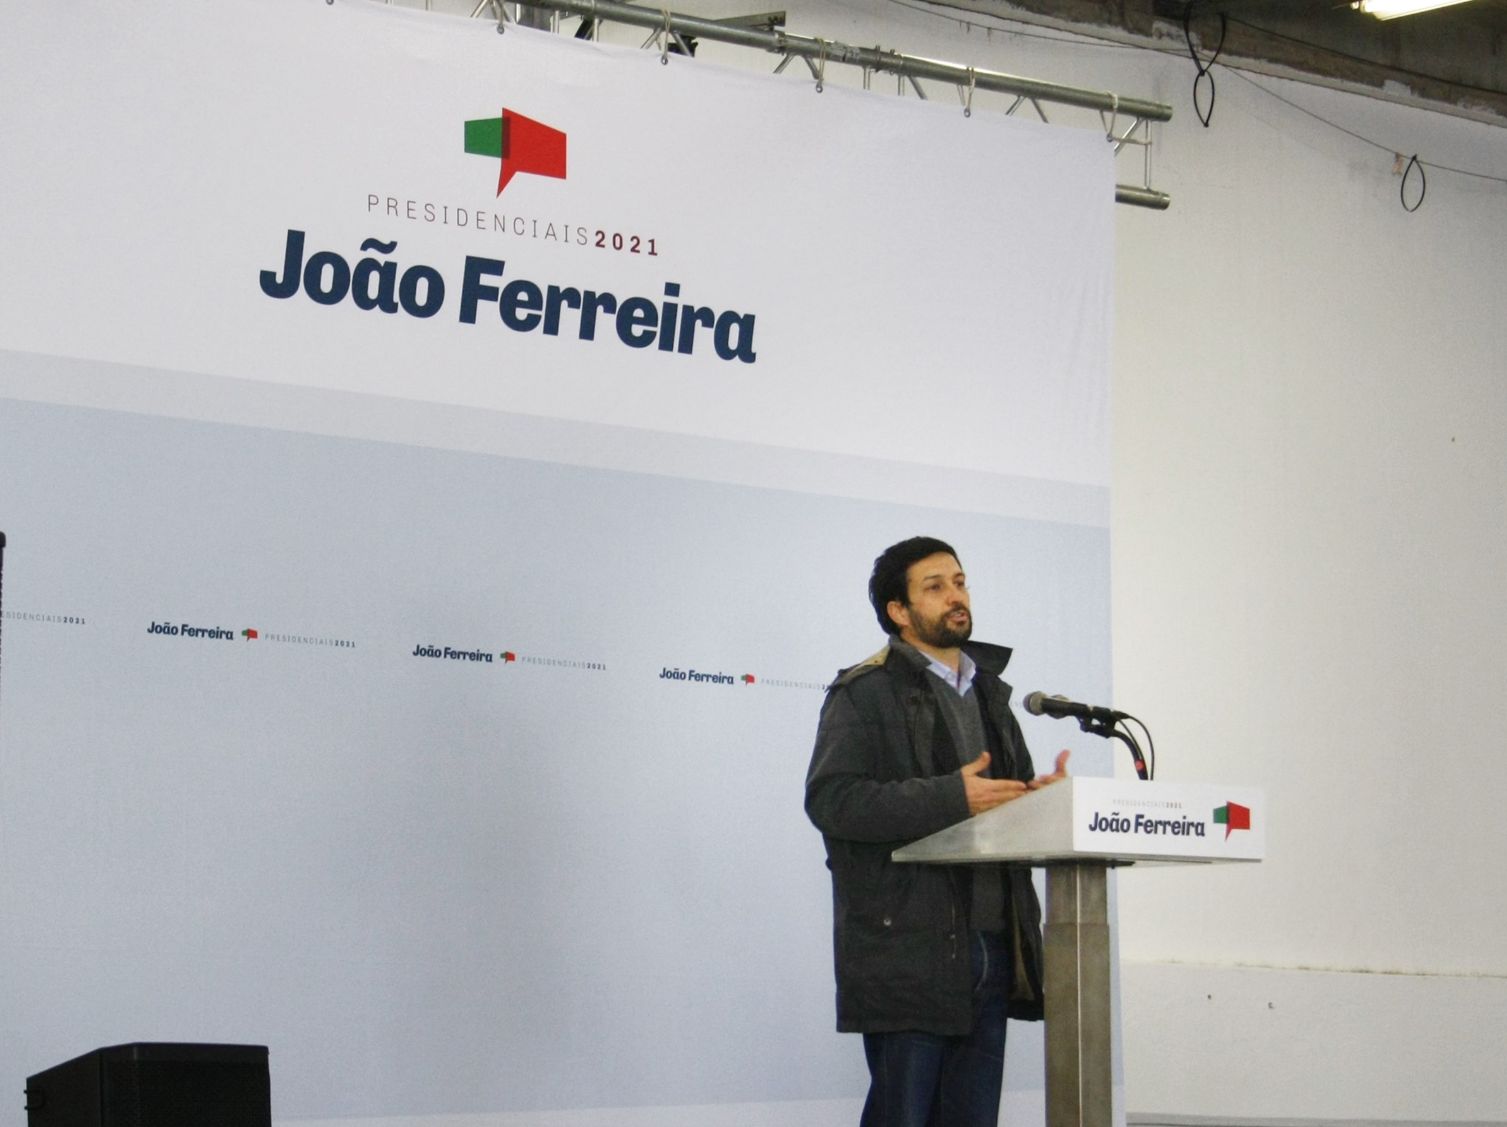 Presidenciais 2021: Candidato João Ferreira aproveita comício em Silves para desferir críticas a Marcelo Rebelo de Sousa face à «incoerência» no cumprimento da Constituição Portuguesa